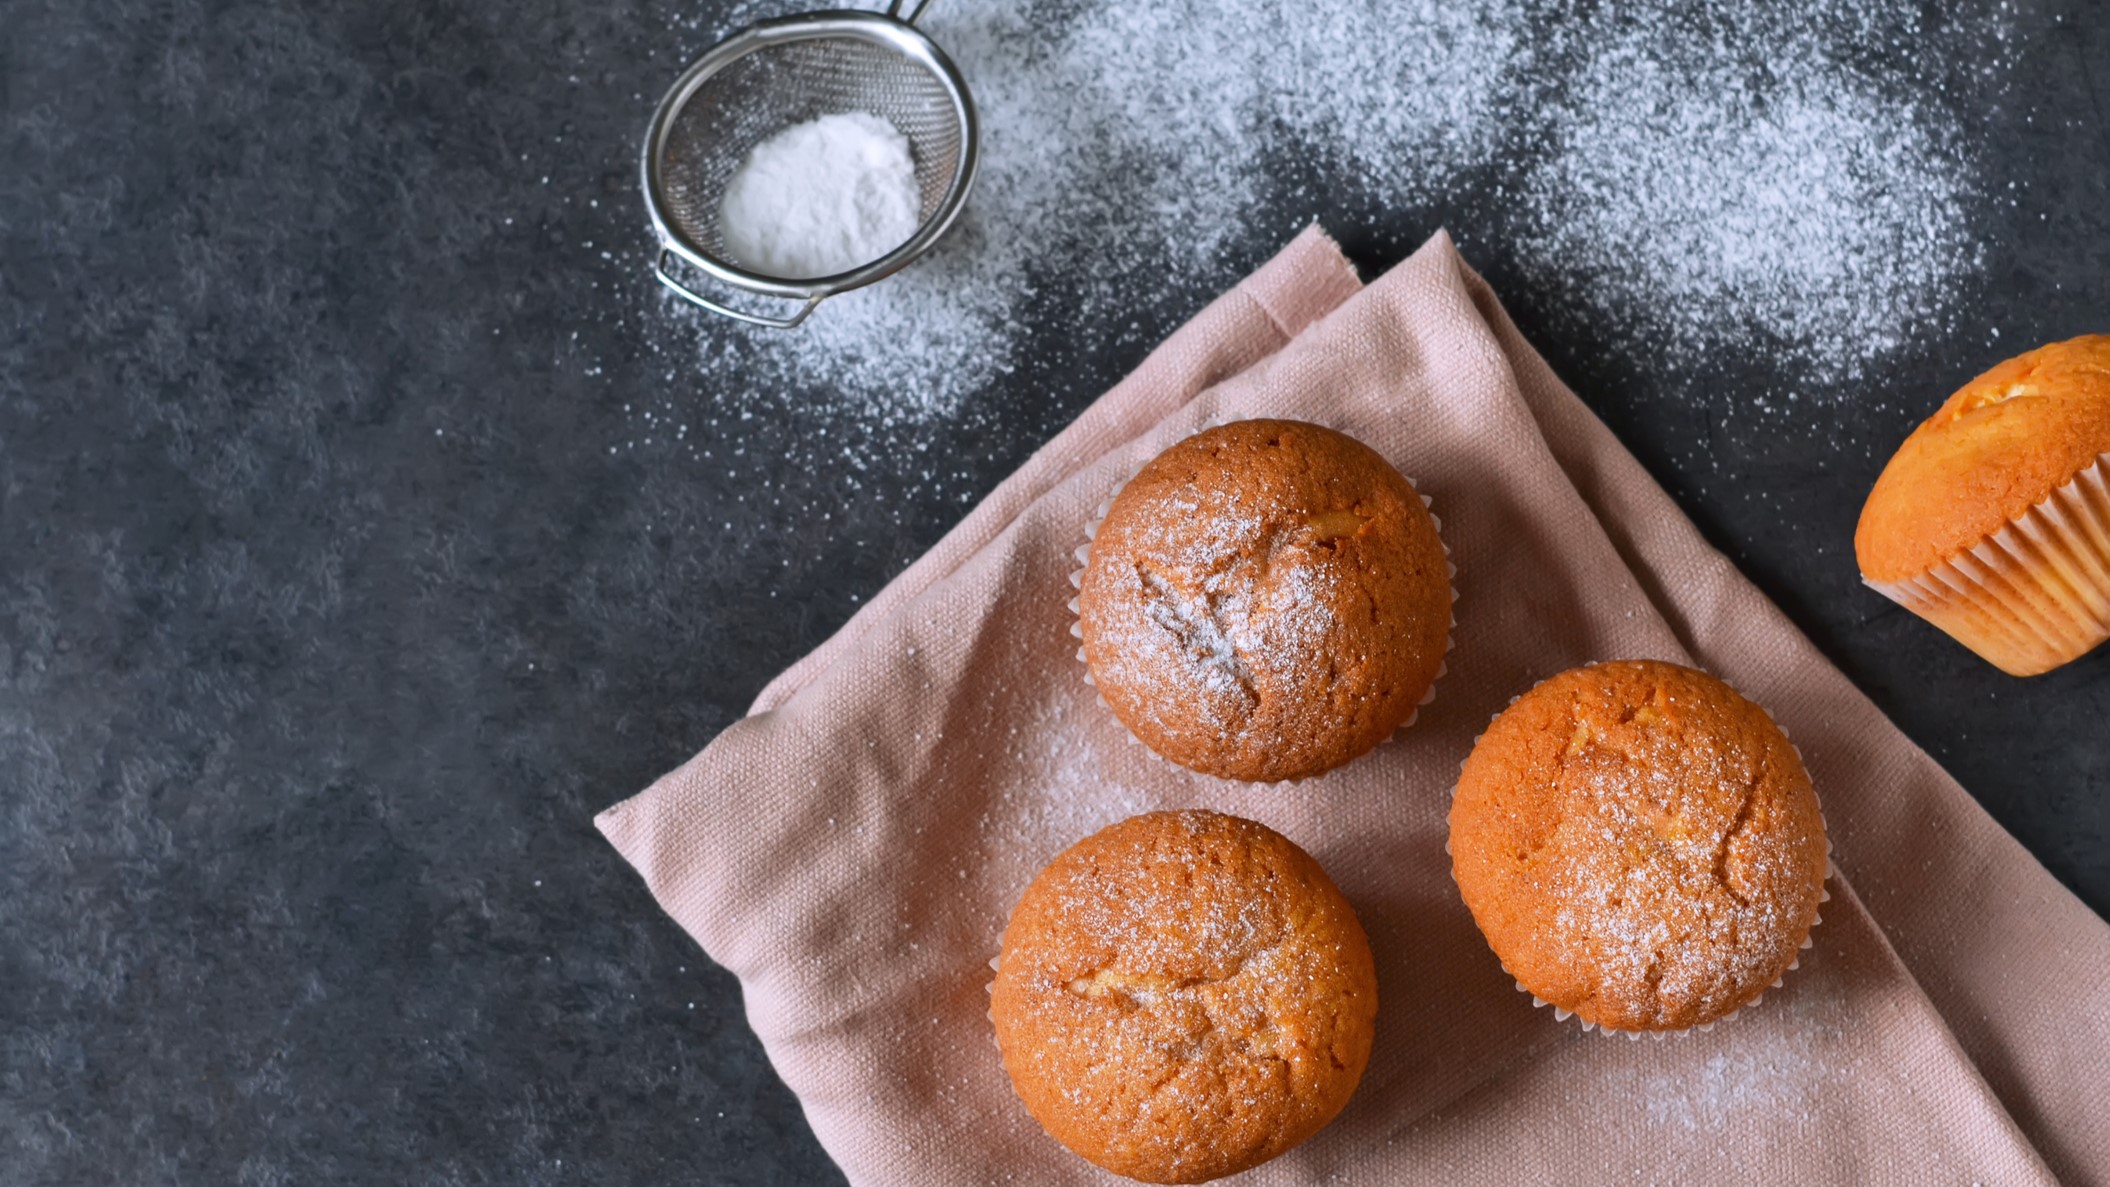 Vegane Muffins, mit Puderzucker bestäubt auf einem Küchentuch vor grauem Untergrund.